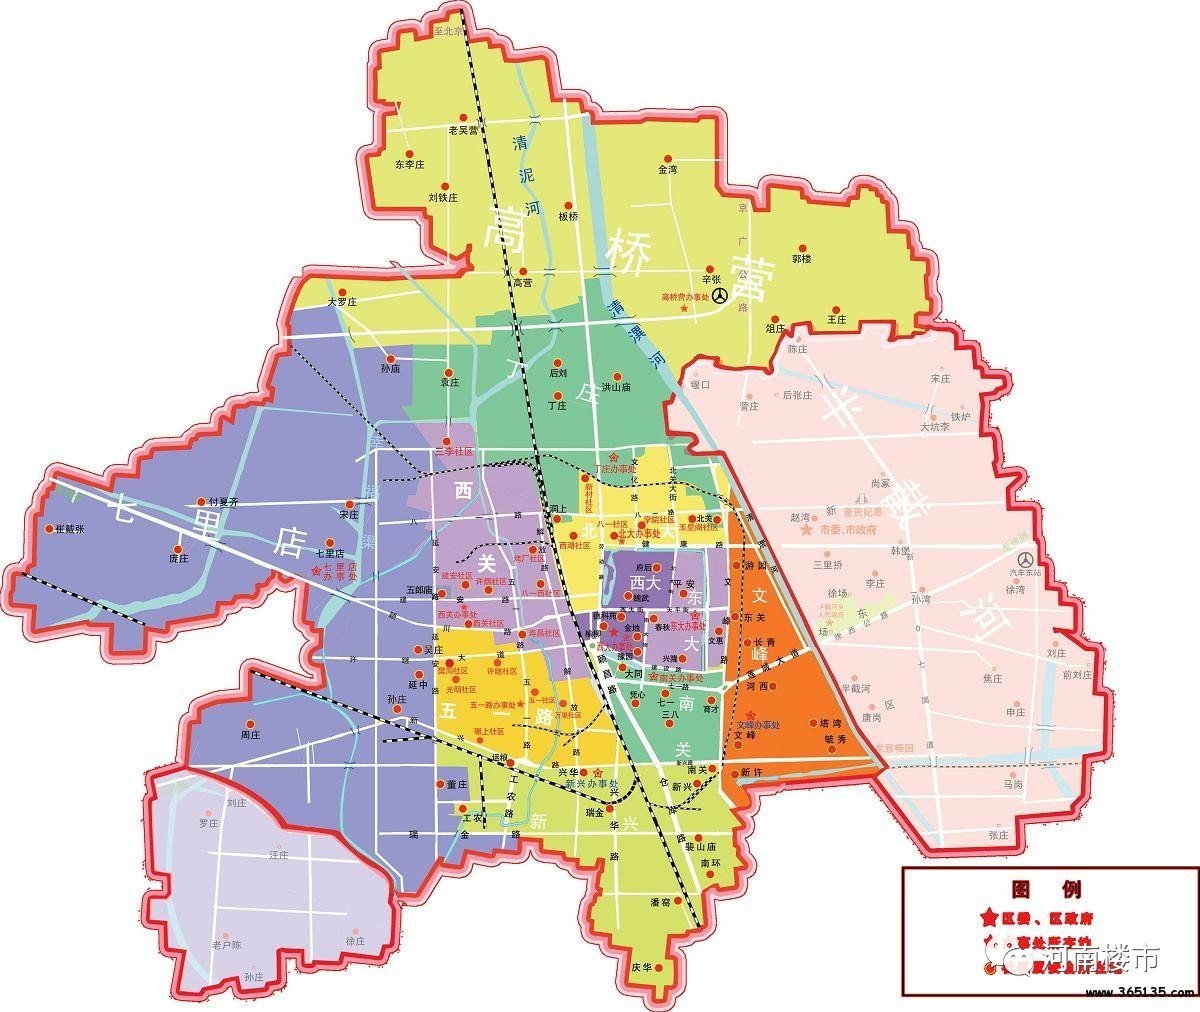 魏都区是许昌市的老城区,总面积88平方公里,人口50万,辖13个街道办事